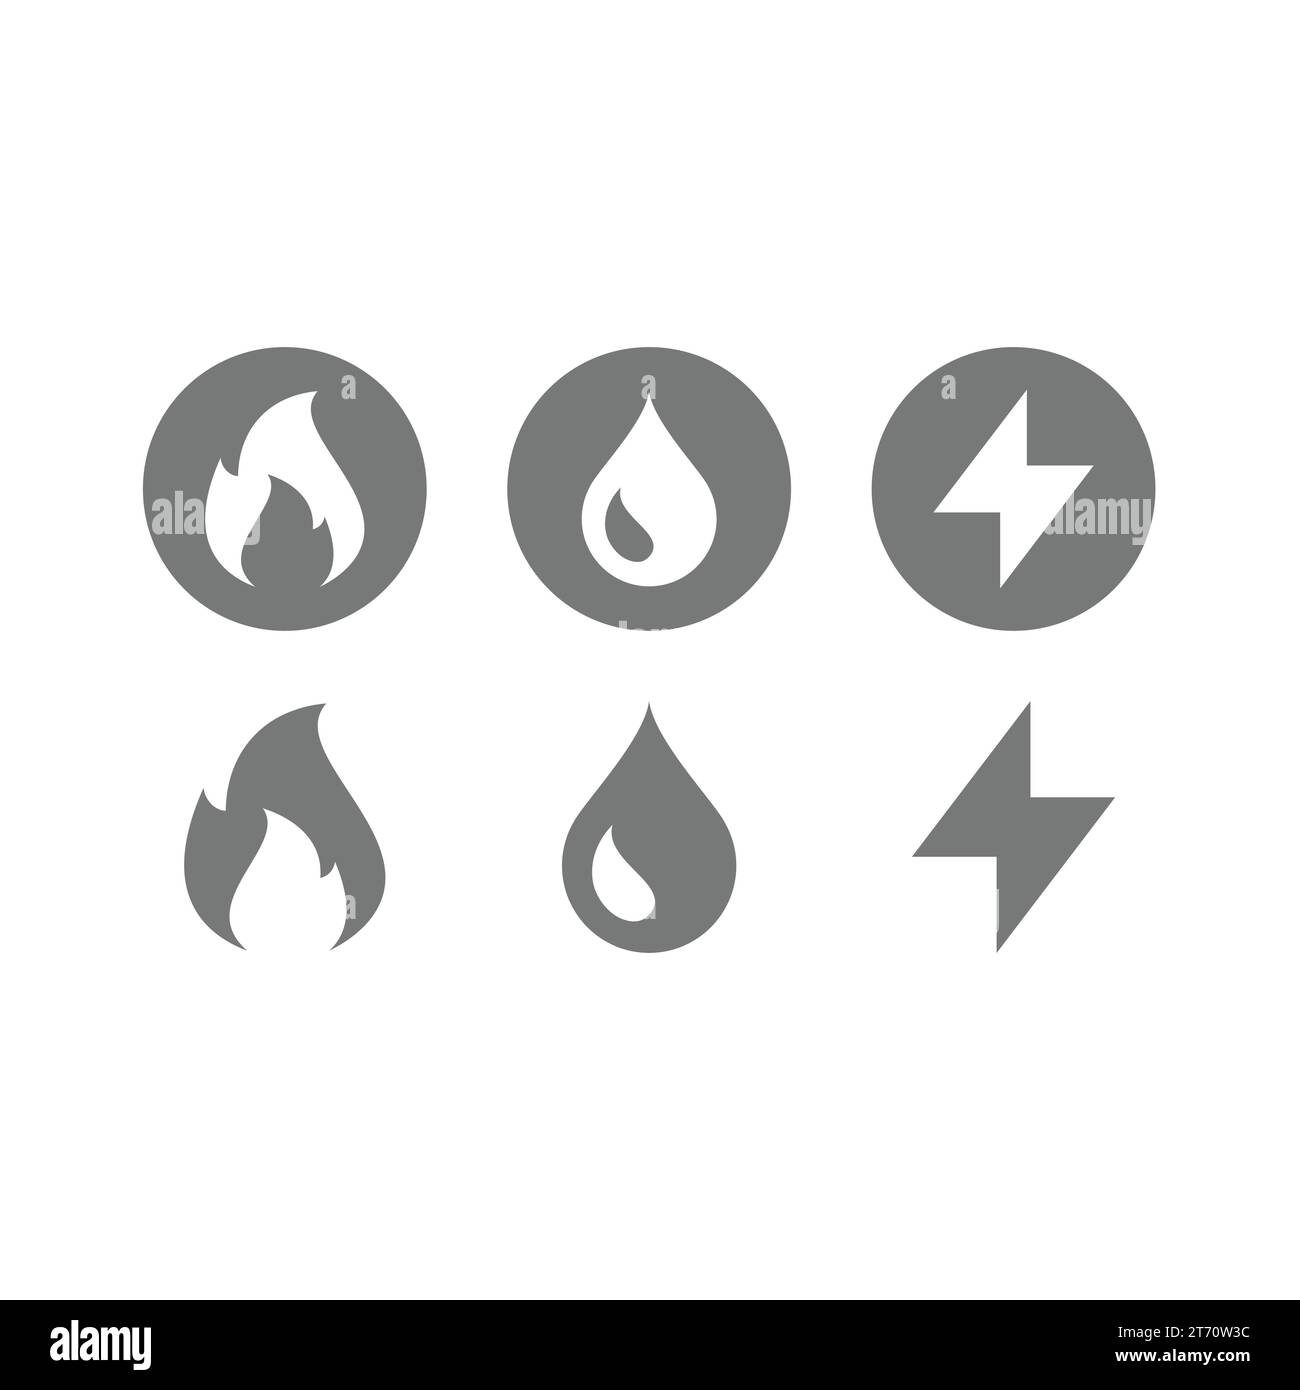 Vektorsymbole für Gas-, Wasser- und Stromversorger. Symbole für öffentliche Versorgungsdienste. Stock Vektor